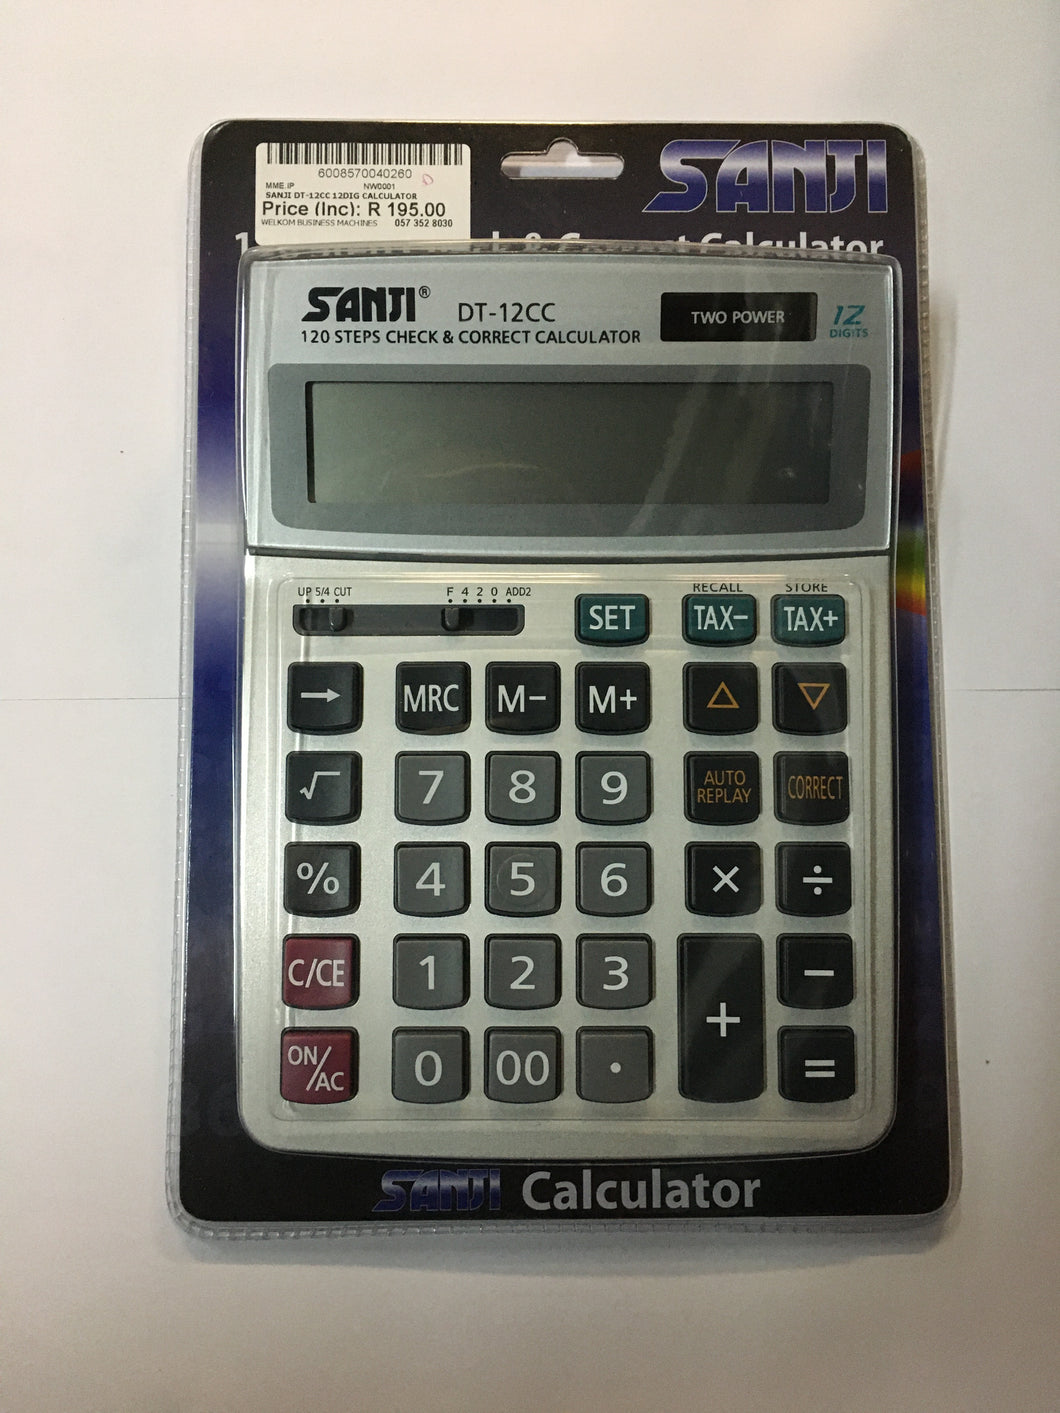 Sanji DT-12cc 12 digit calculator